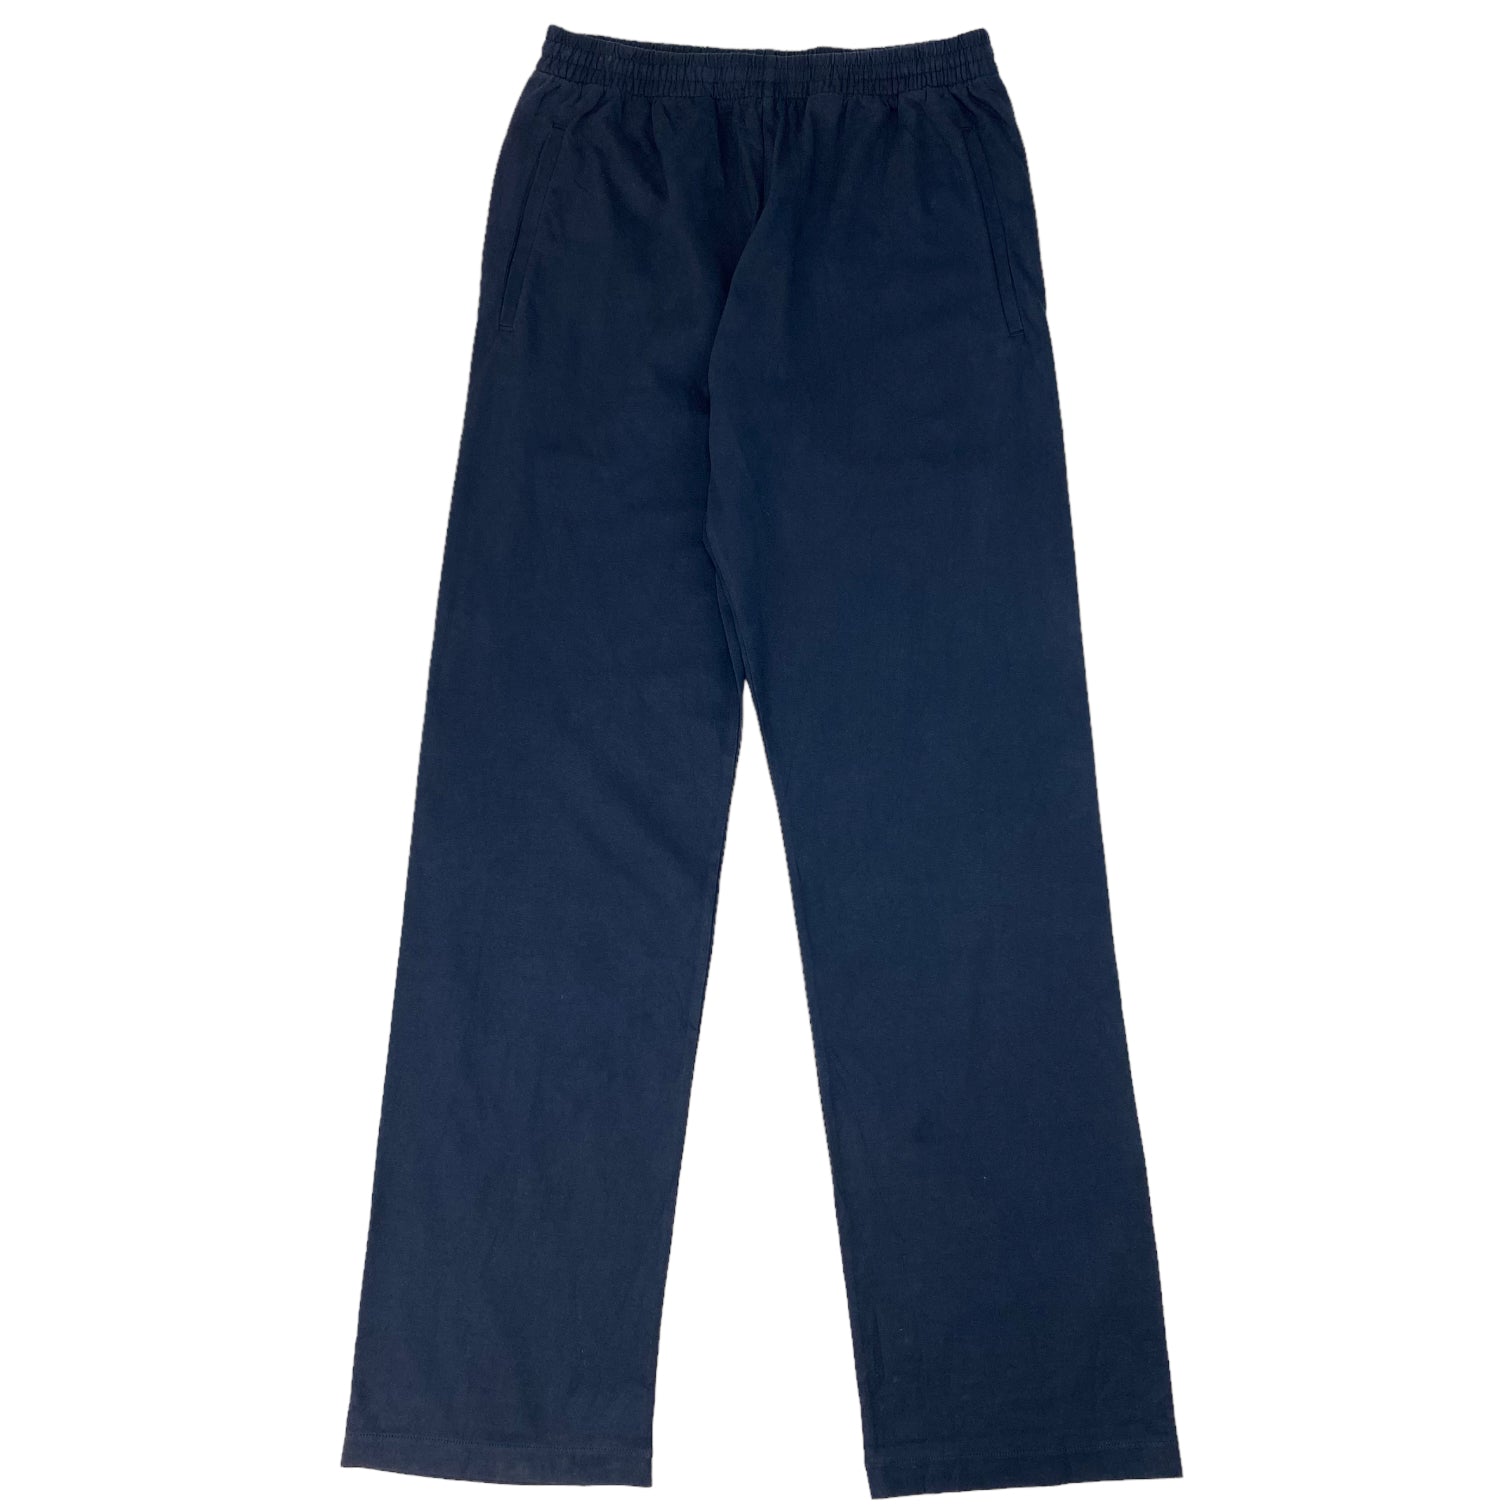 Yeezy x Gap Navy Unreleased Cotton Trouser - Navy Pants